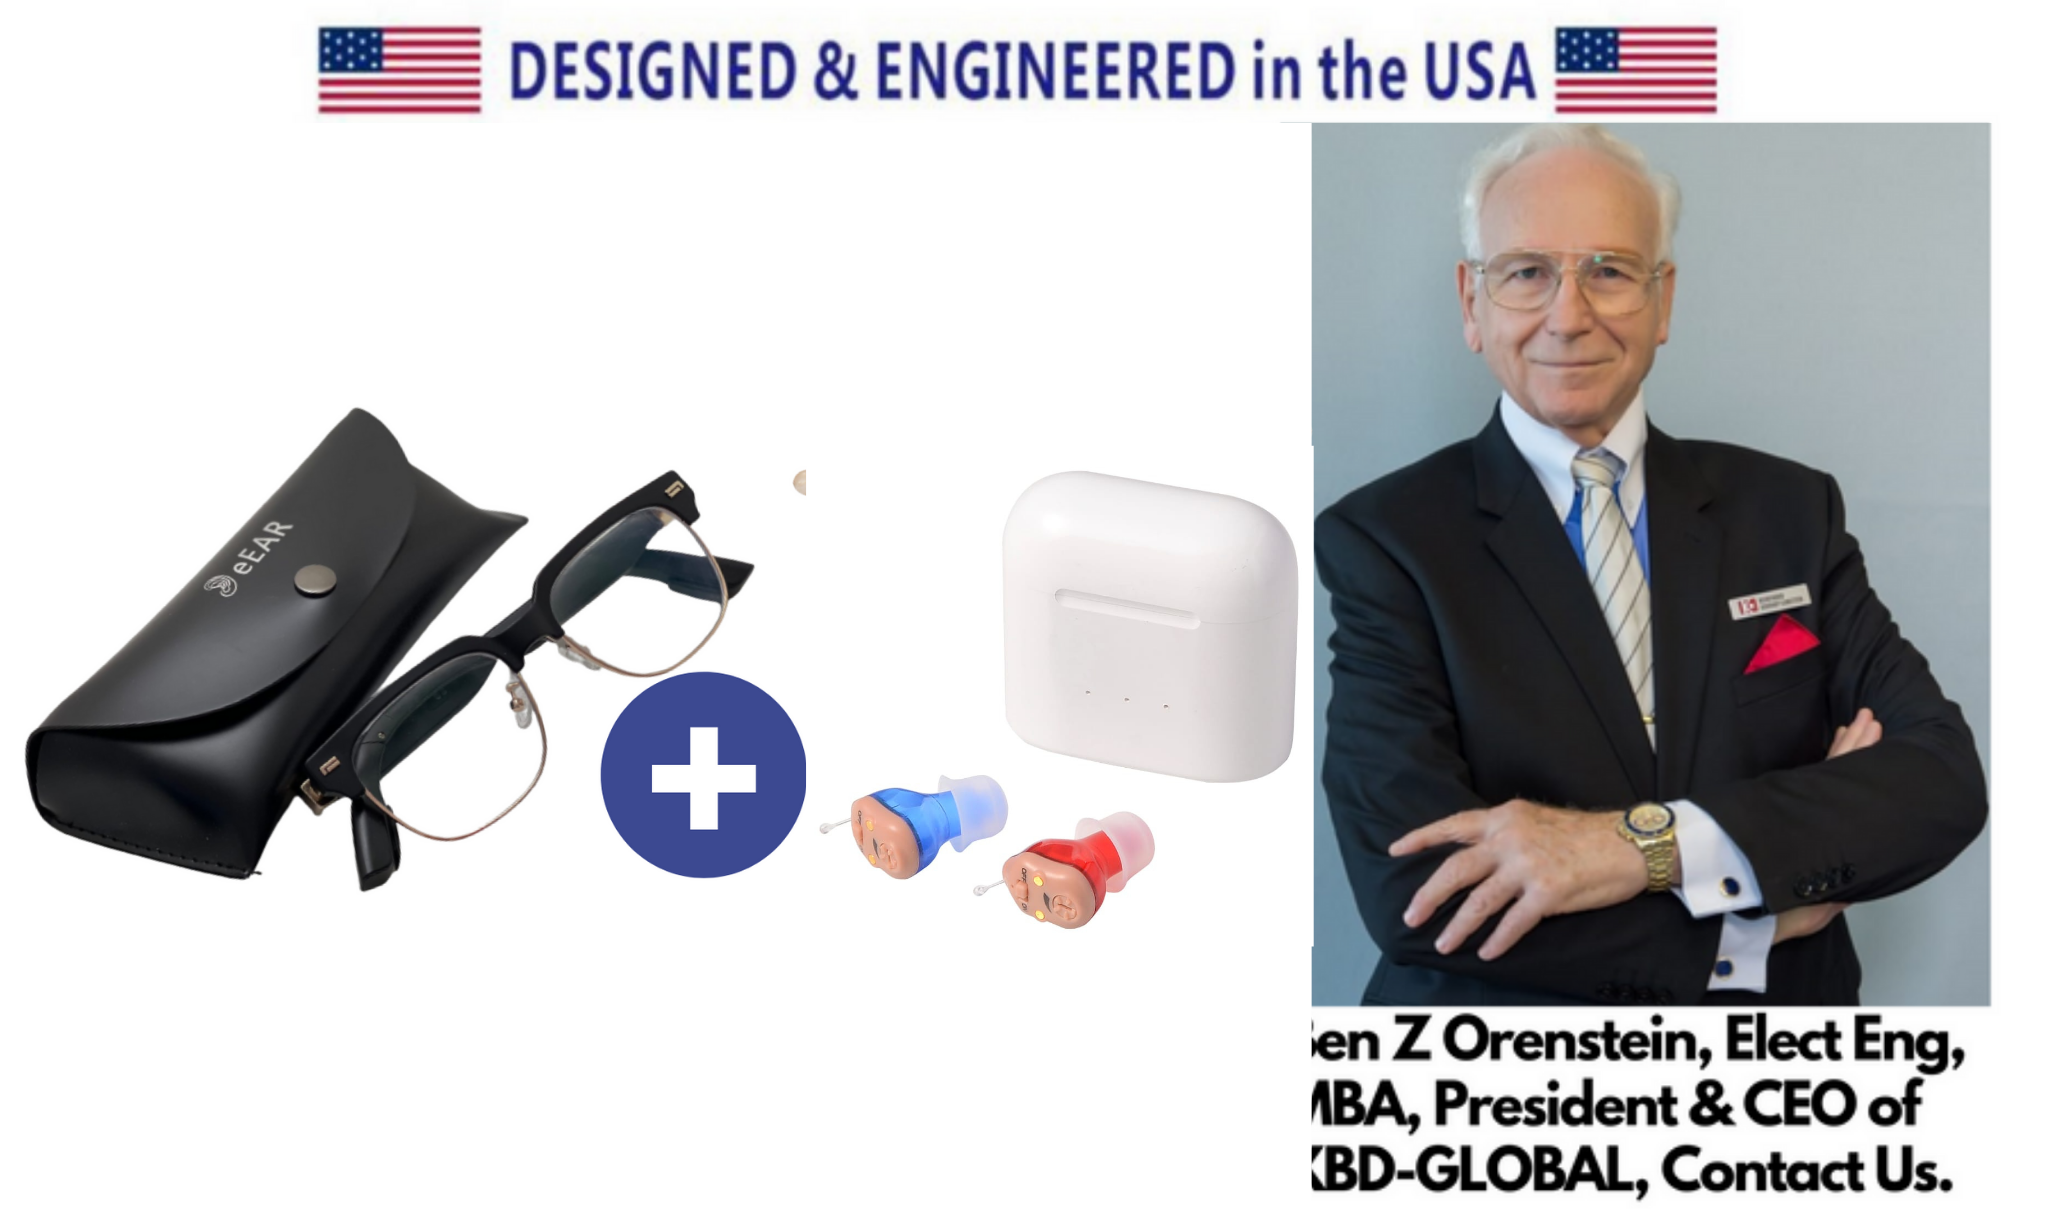 eEAR-BTGC-CIC: integra técnicamente Bluetooth, sonido de grado militar de conducción ósea, con la última tecnología de audífonos en miniatura Digital CIC. Primero y mejor del mundo. Diseñado y fabricado en los Estados Unidos.